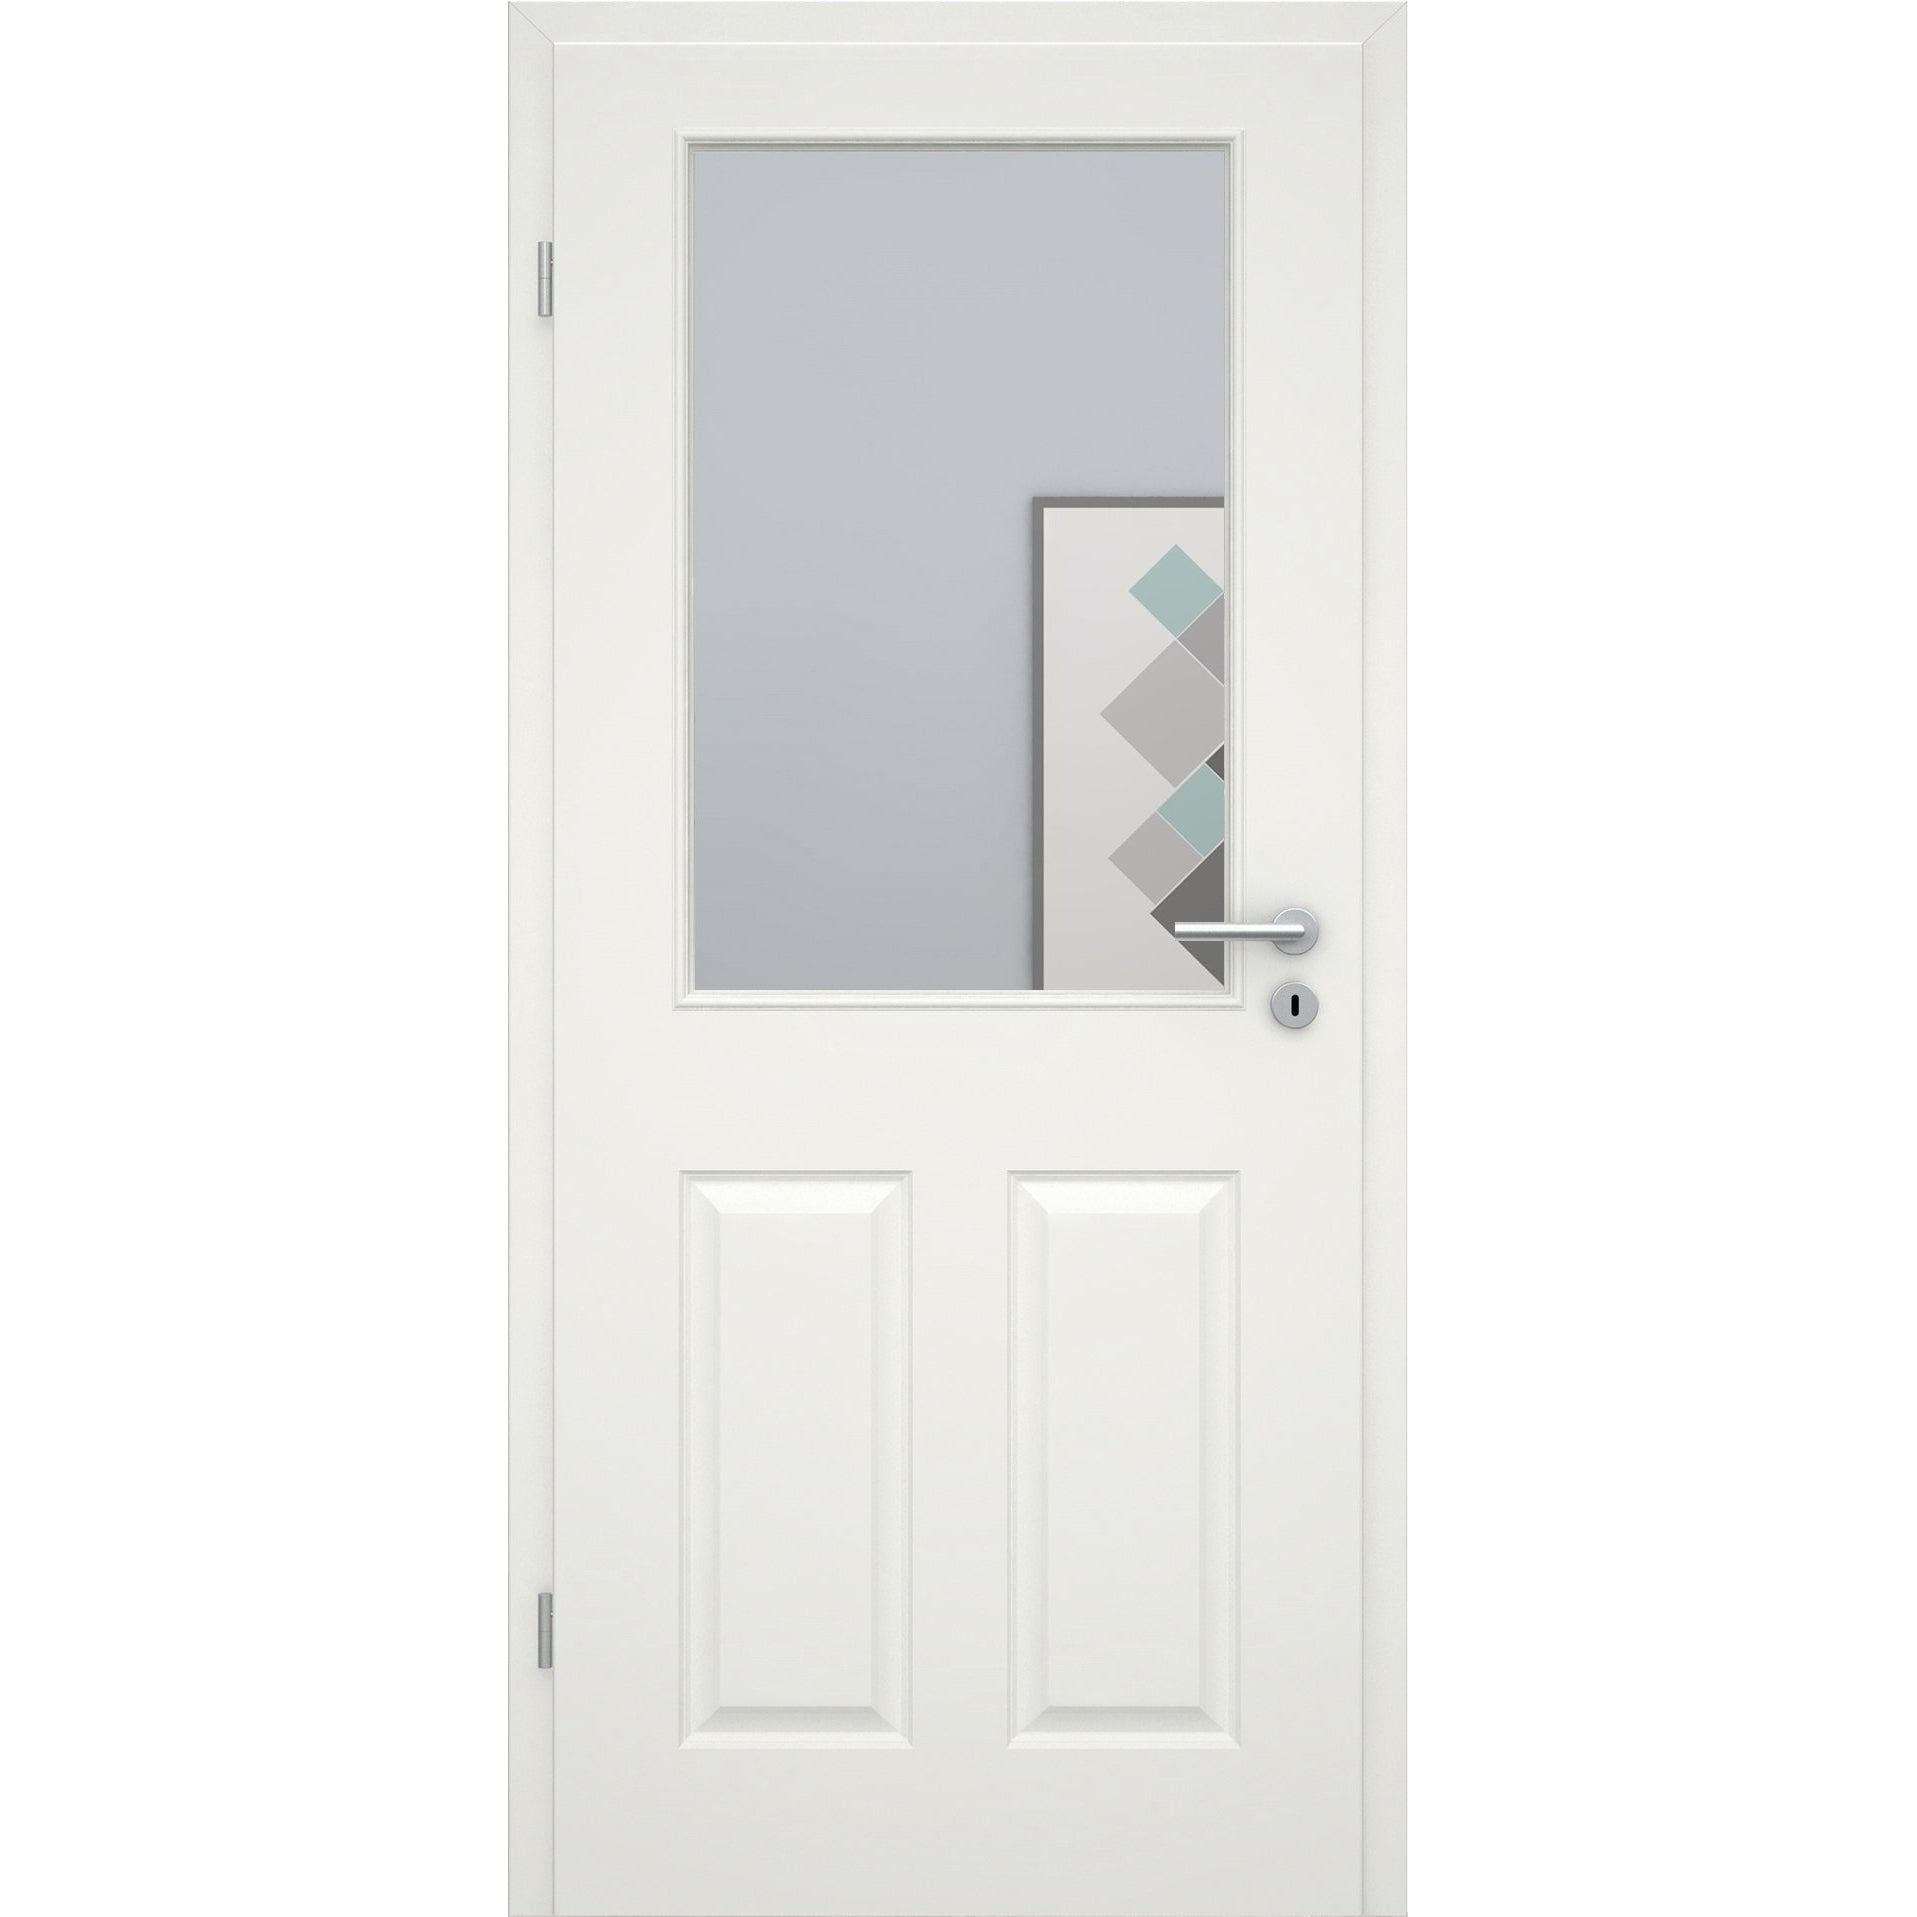 Zimmertür mit Lichtausschnitt groß soft-weiß 4 Kassetten Eckkante - Modell Stiltür K41LA